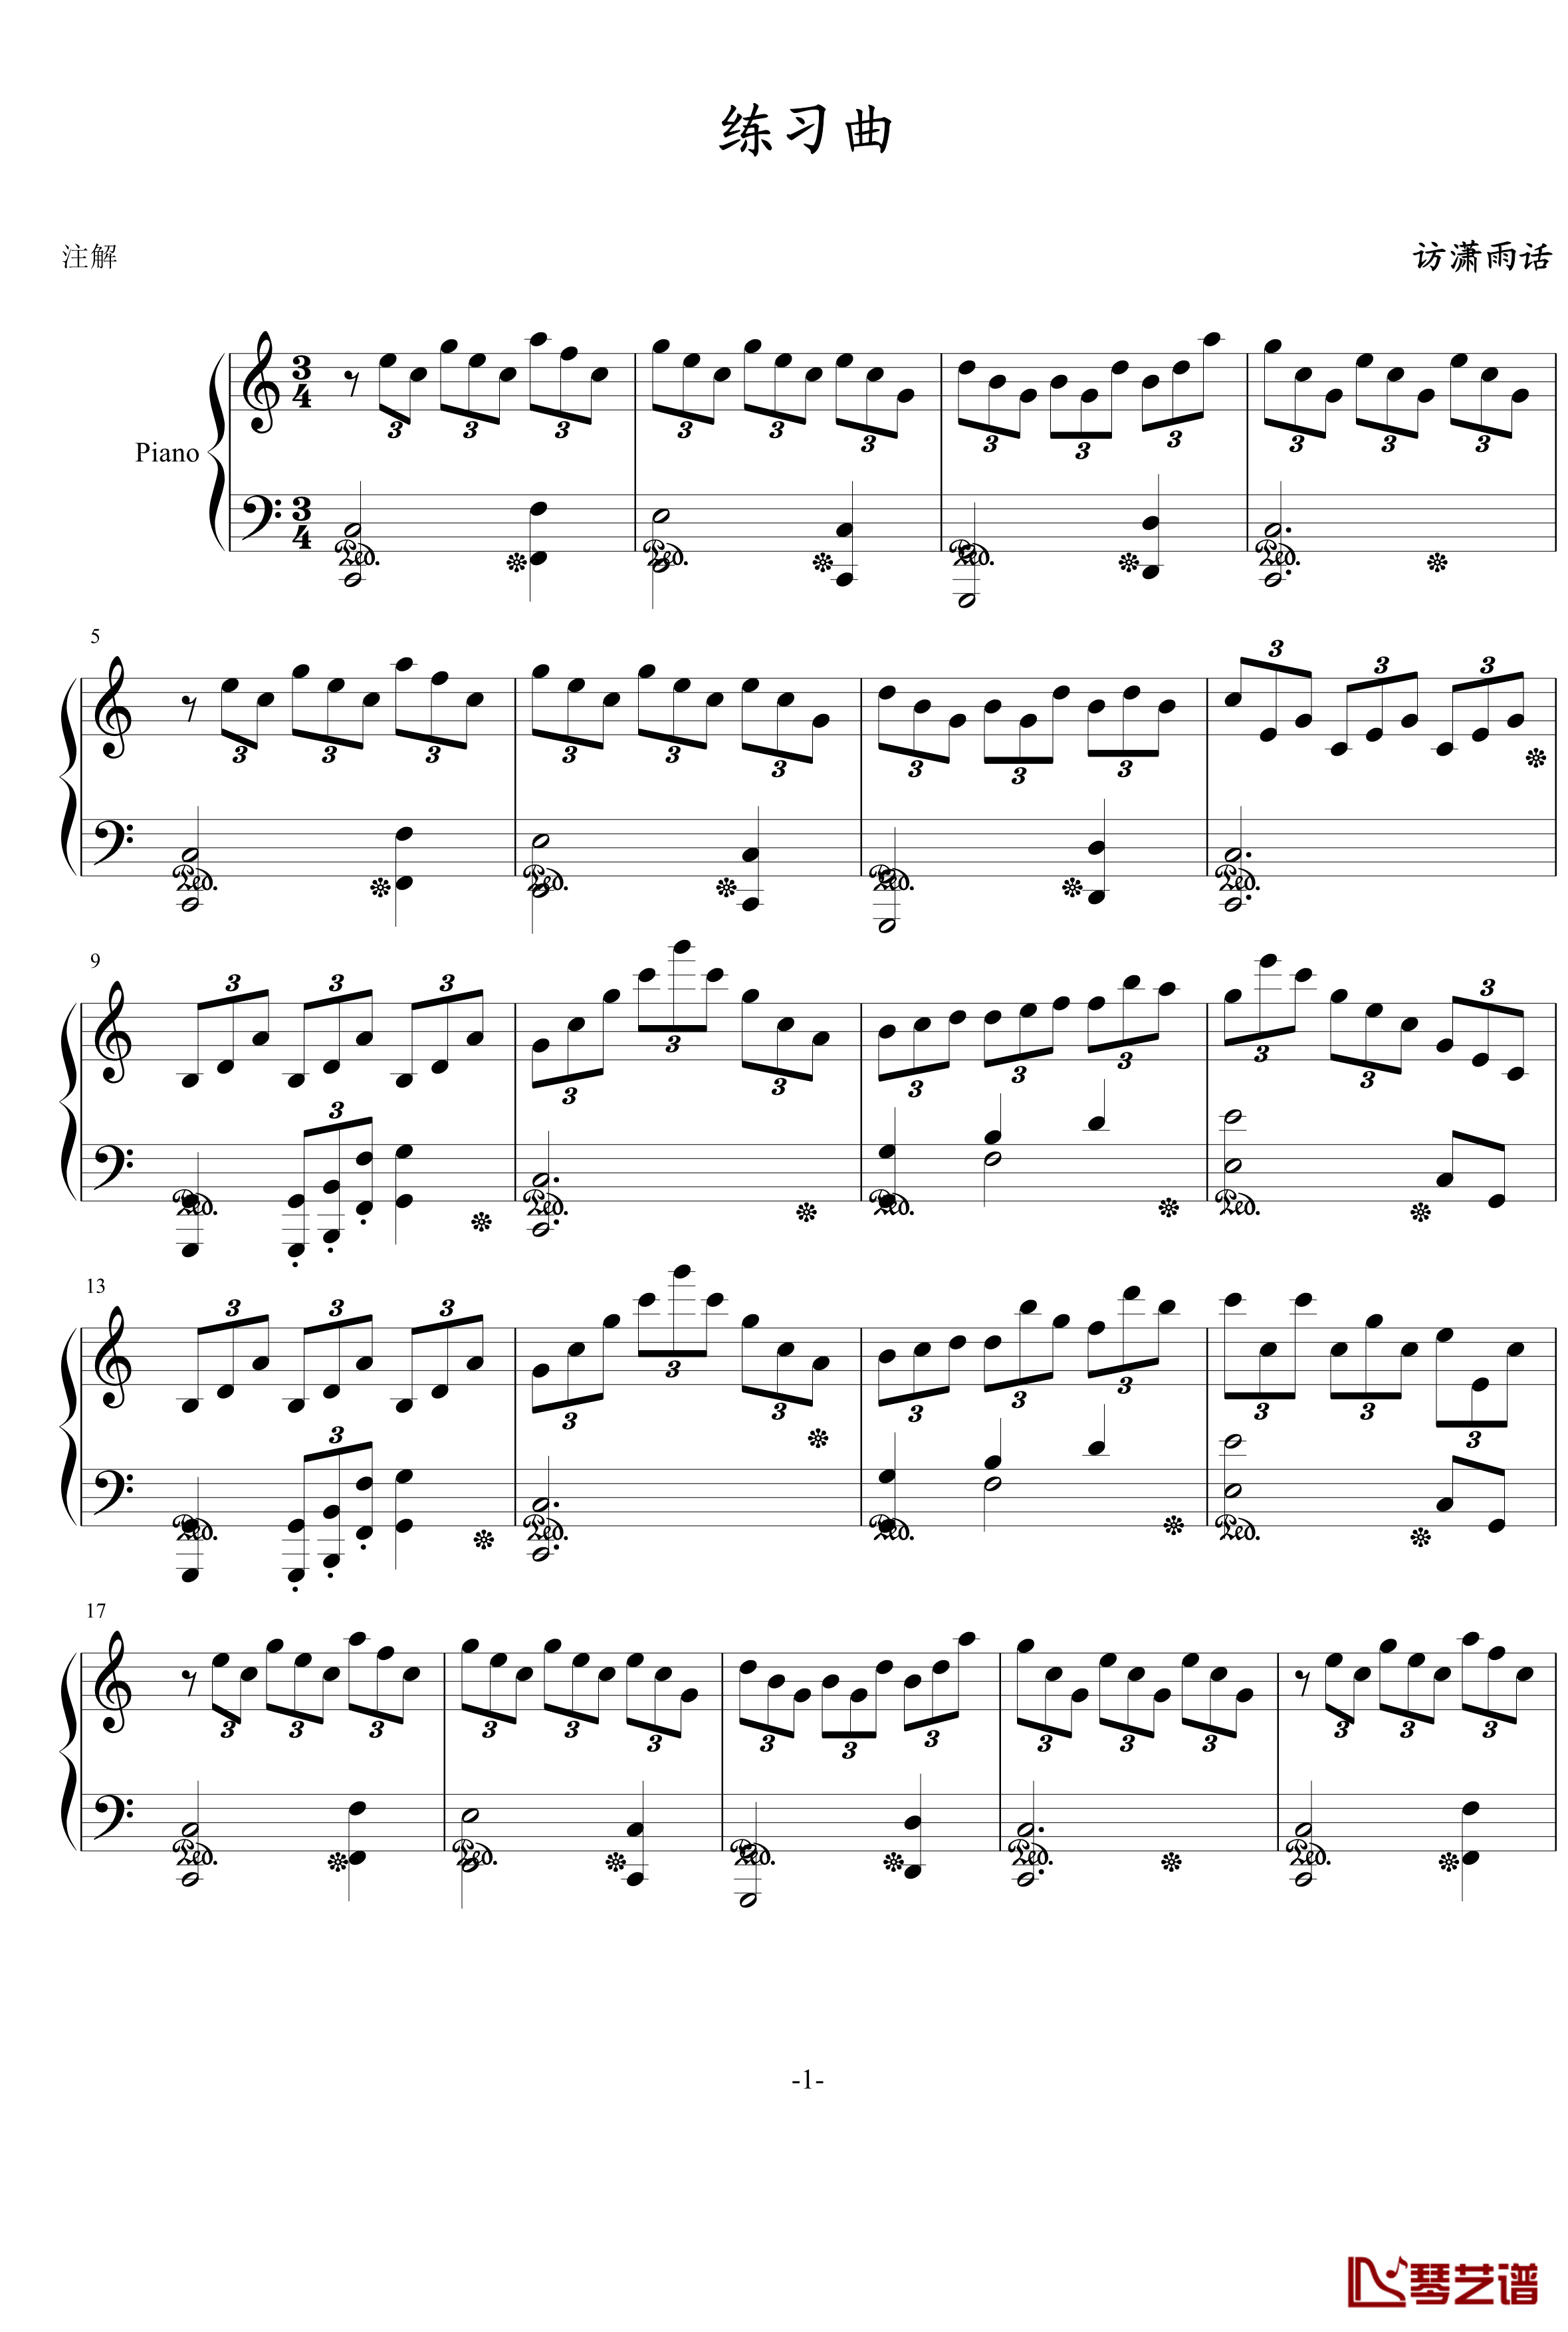 练习曲钢琴谱-访潇雨话1